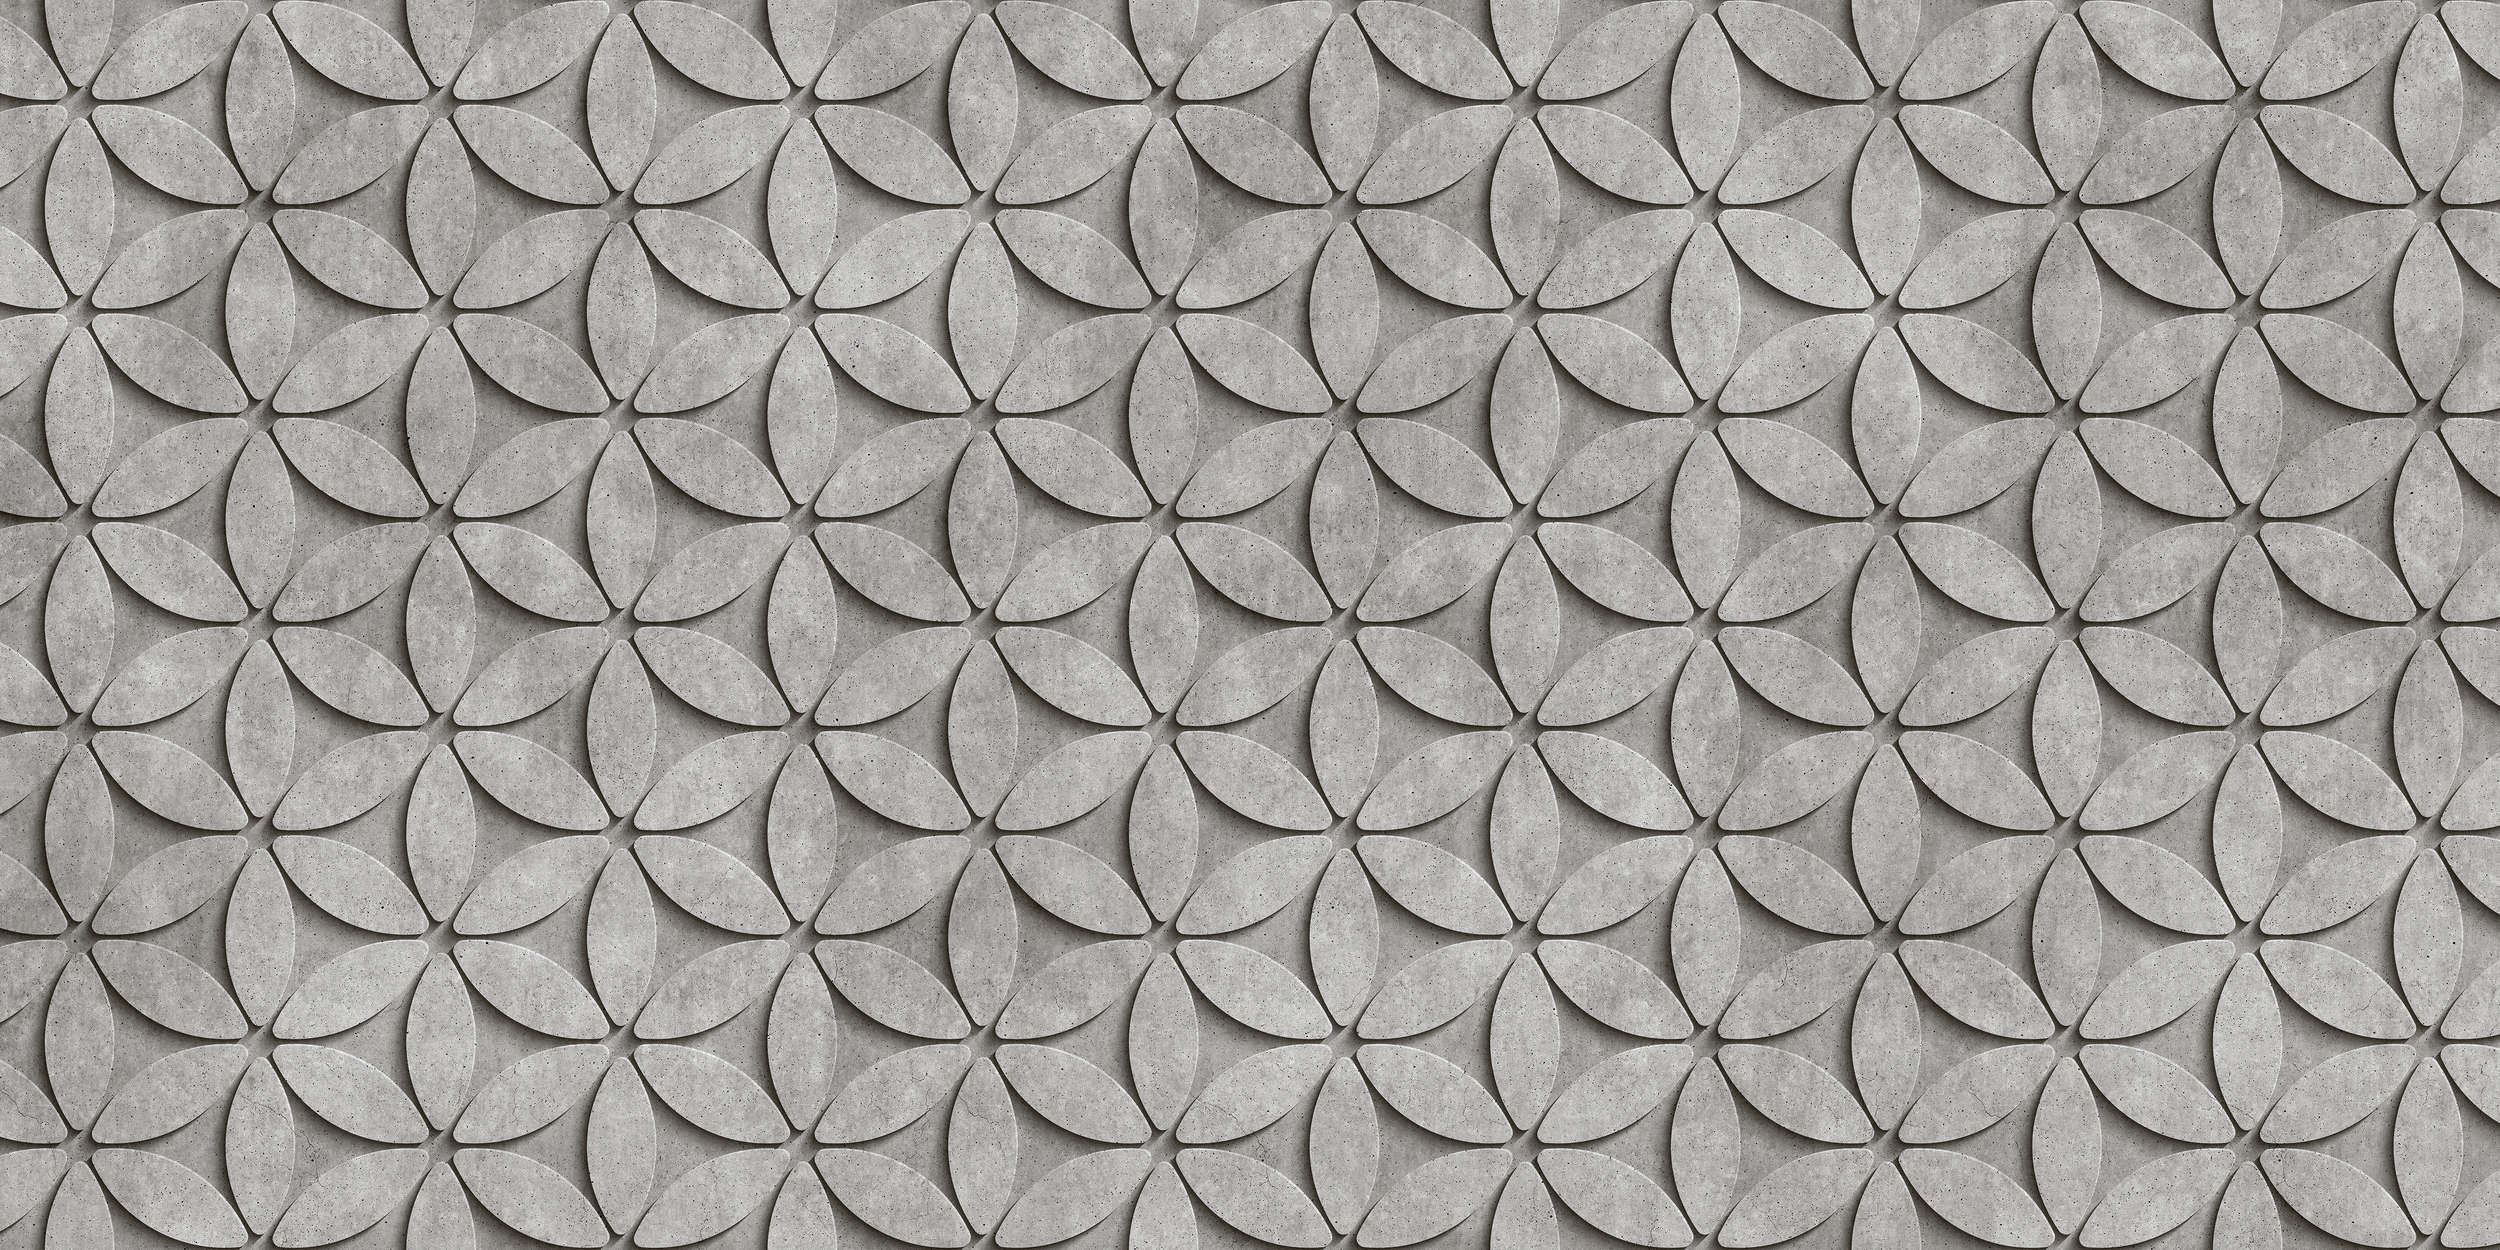             Piastrella 1 - Carta da parati in poligoni di cemento 3D - Grigio, nero | Vello liscio perlato
        